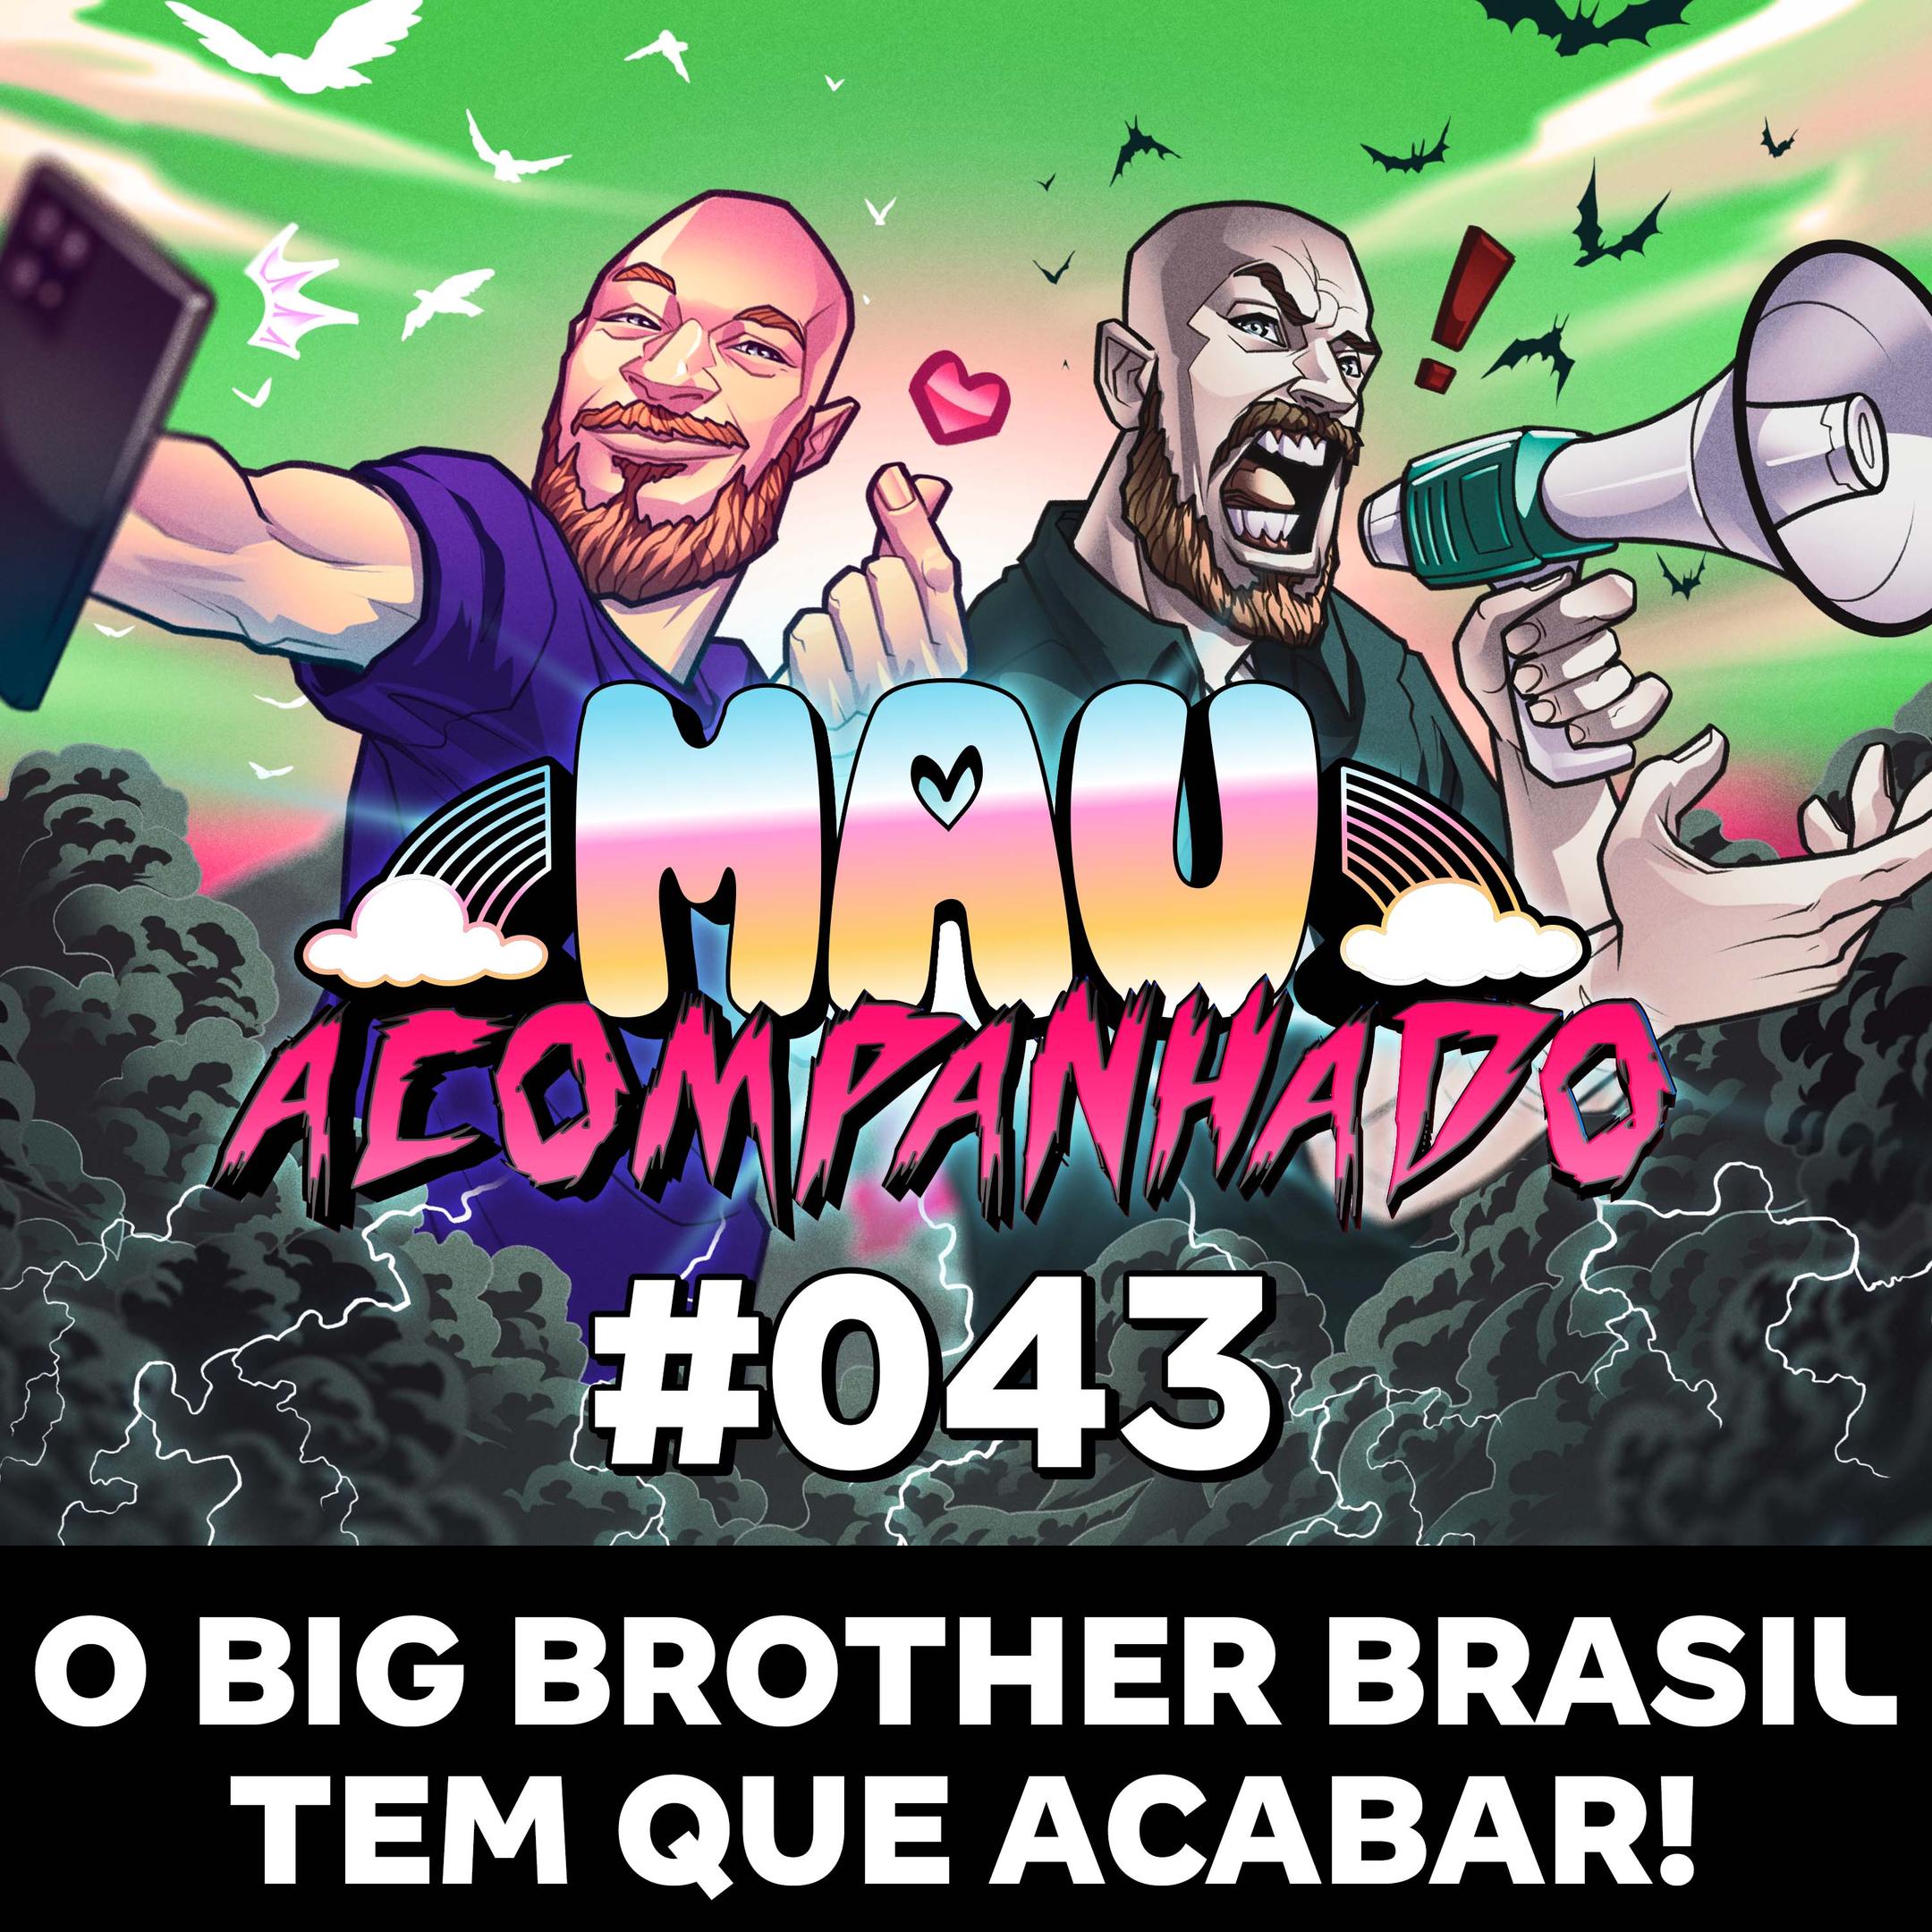 O Big Brother Brasil tem que acabar!